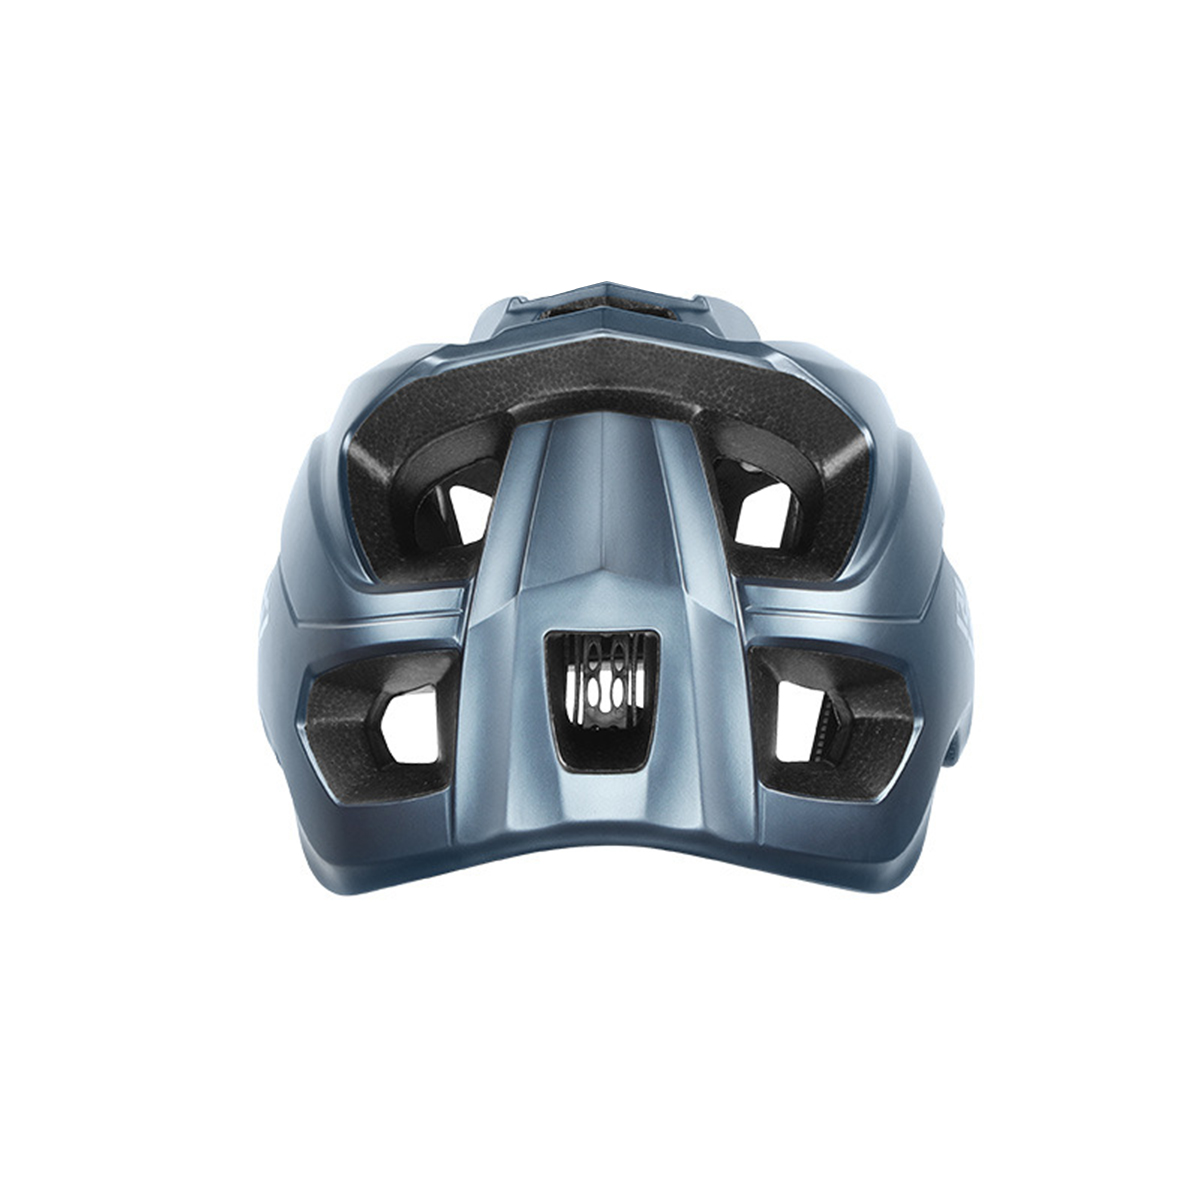 blau) Helm, 56-62 cm, PROSCENIC TS-45 cm